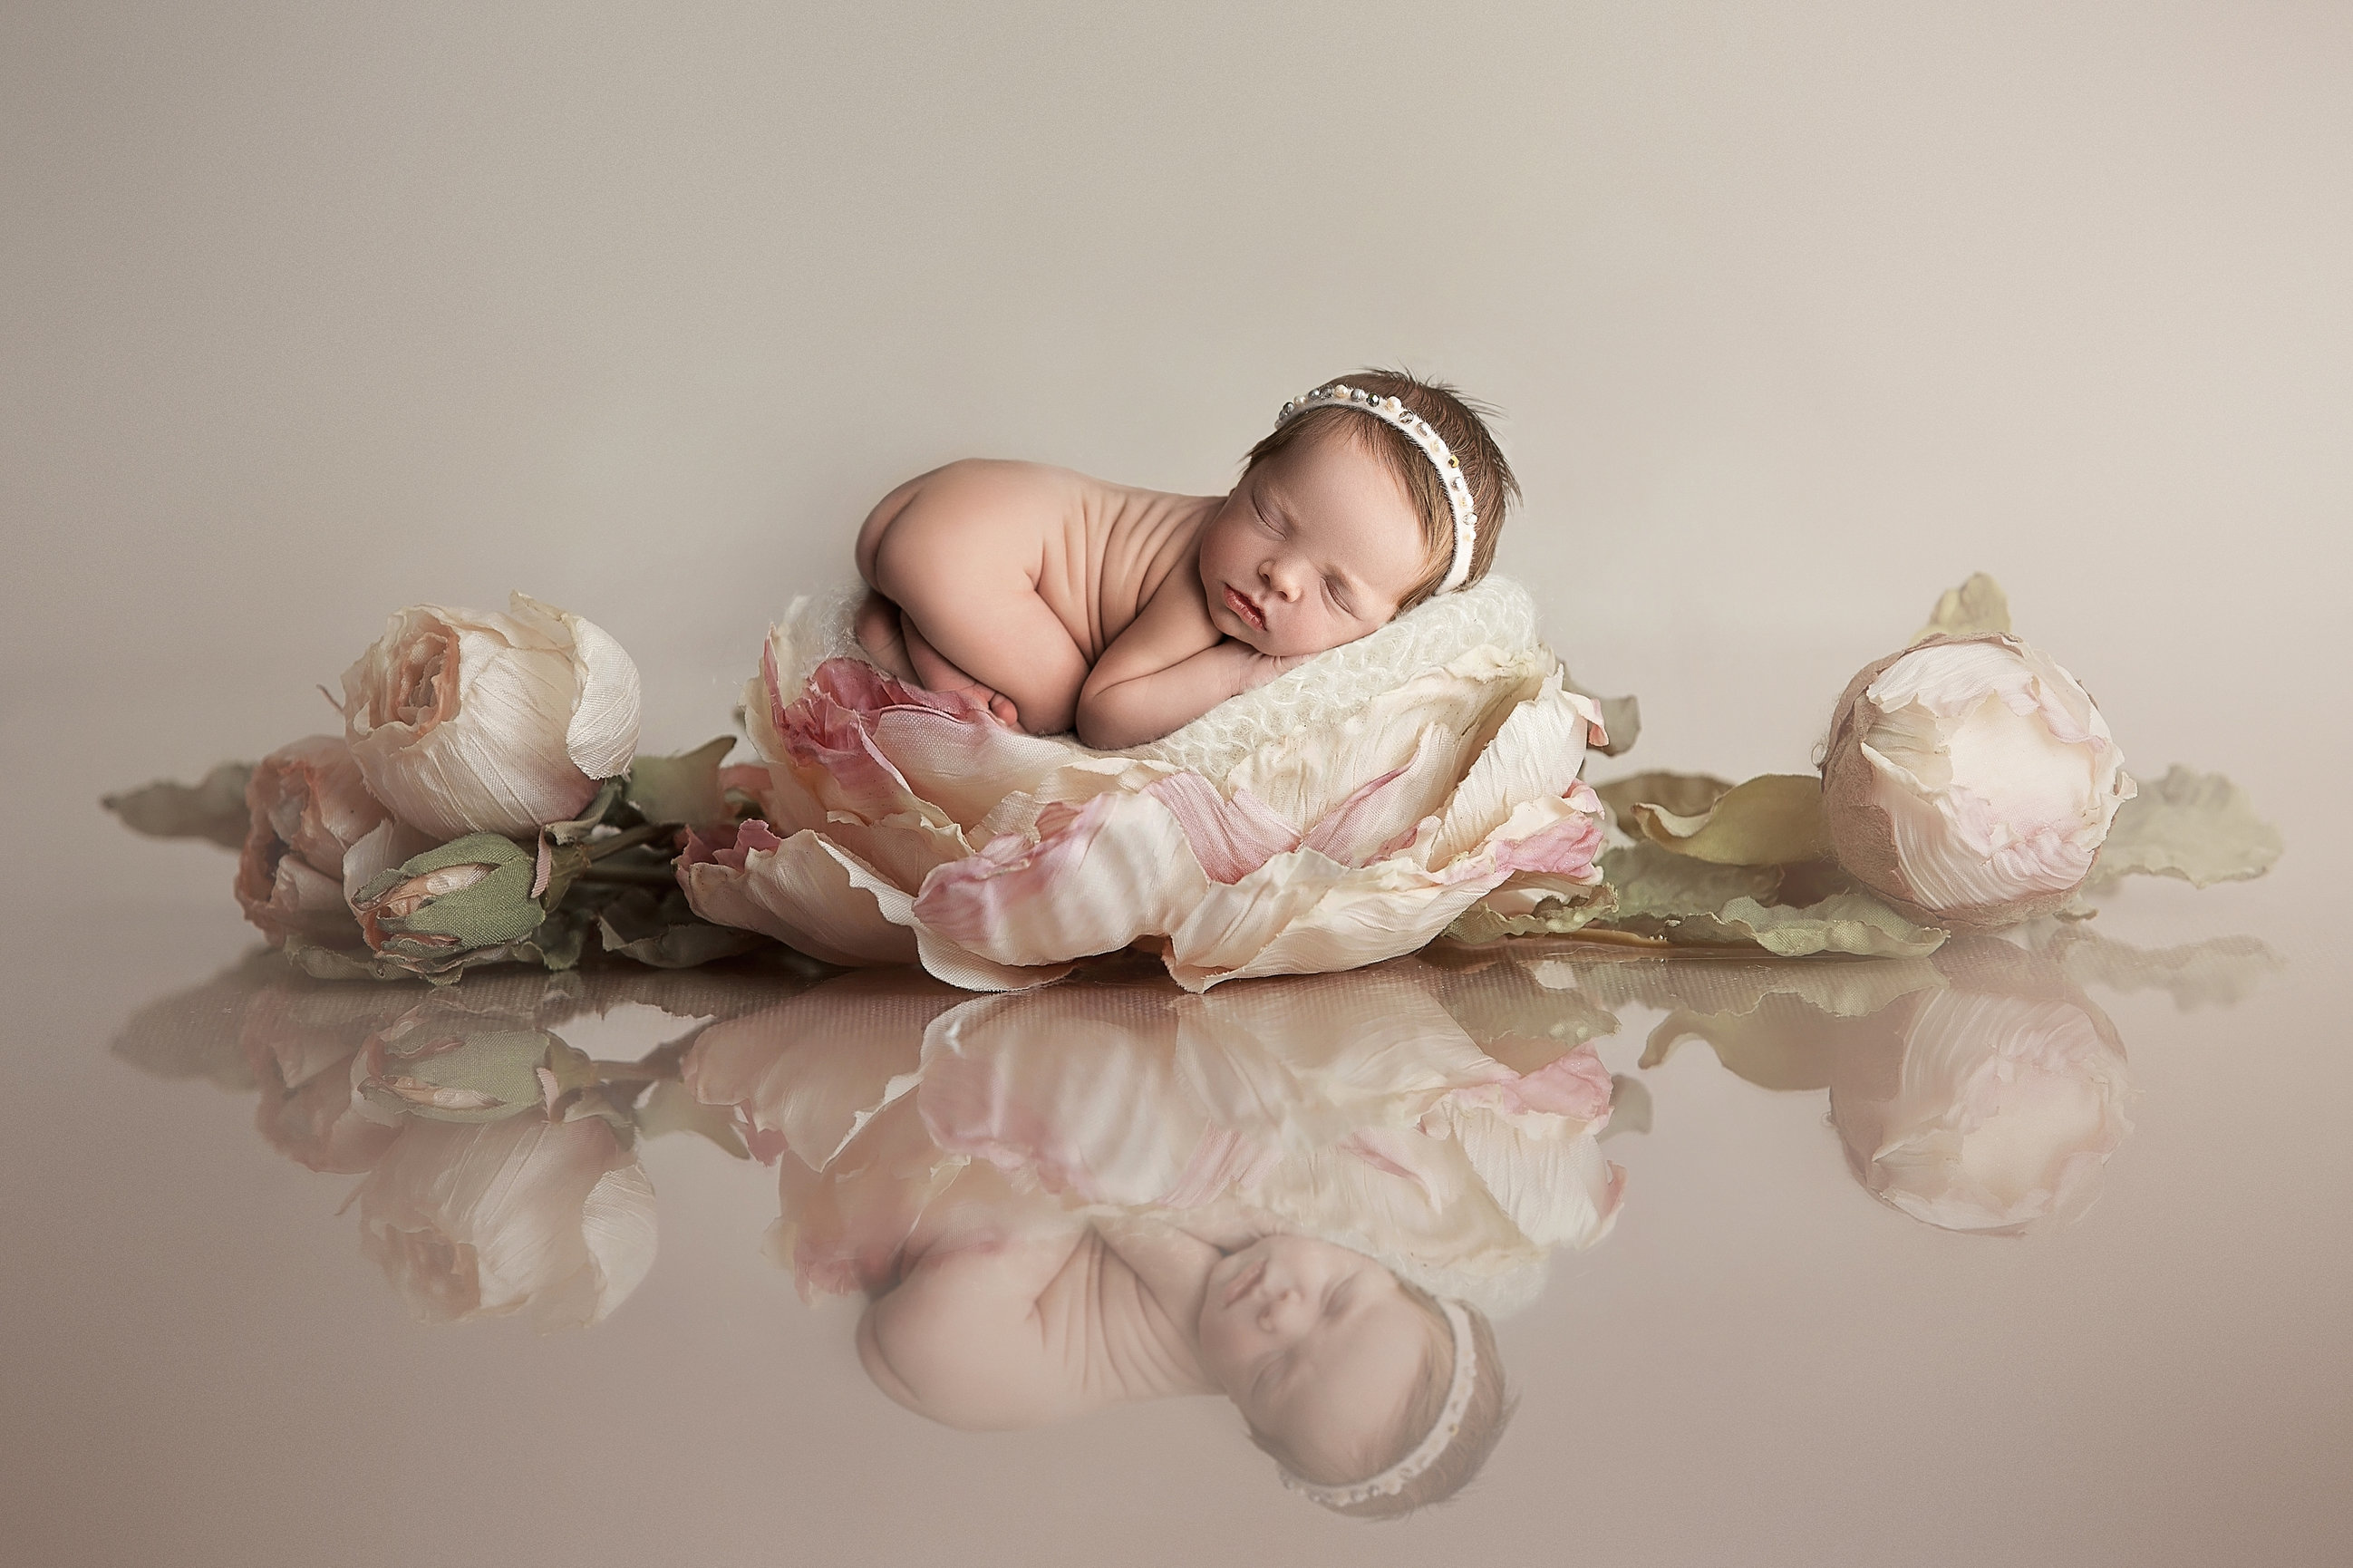 Zoey • Newborn Girl • Calgary Newborn Photographer - Hocus Focus Photography